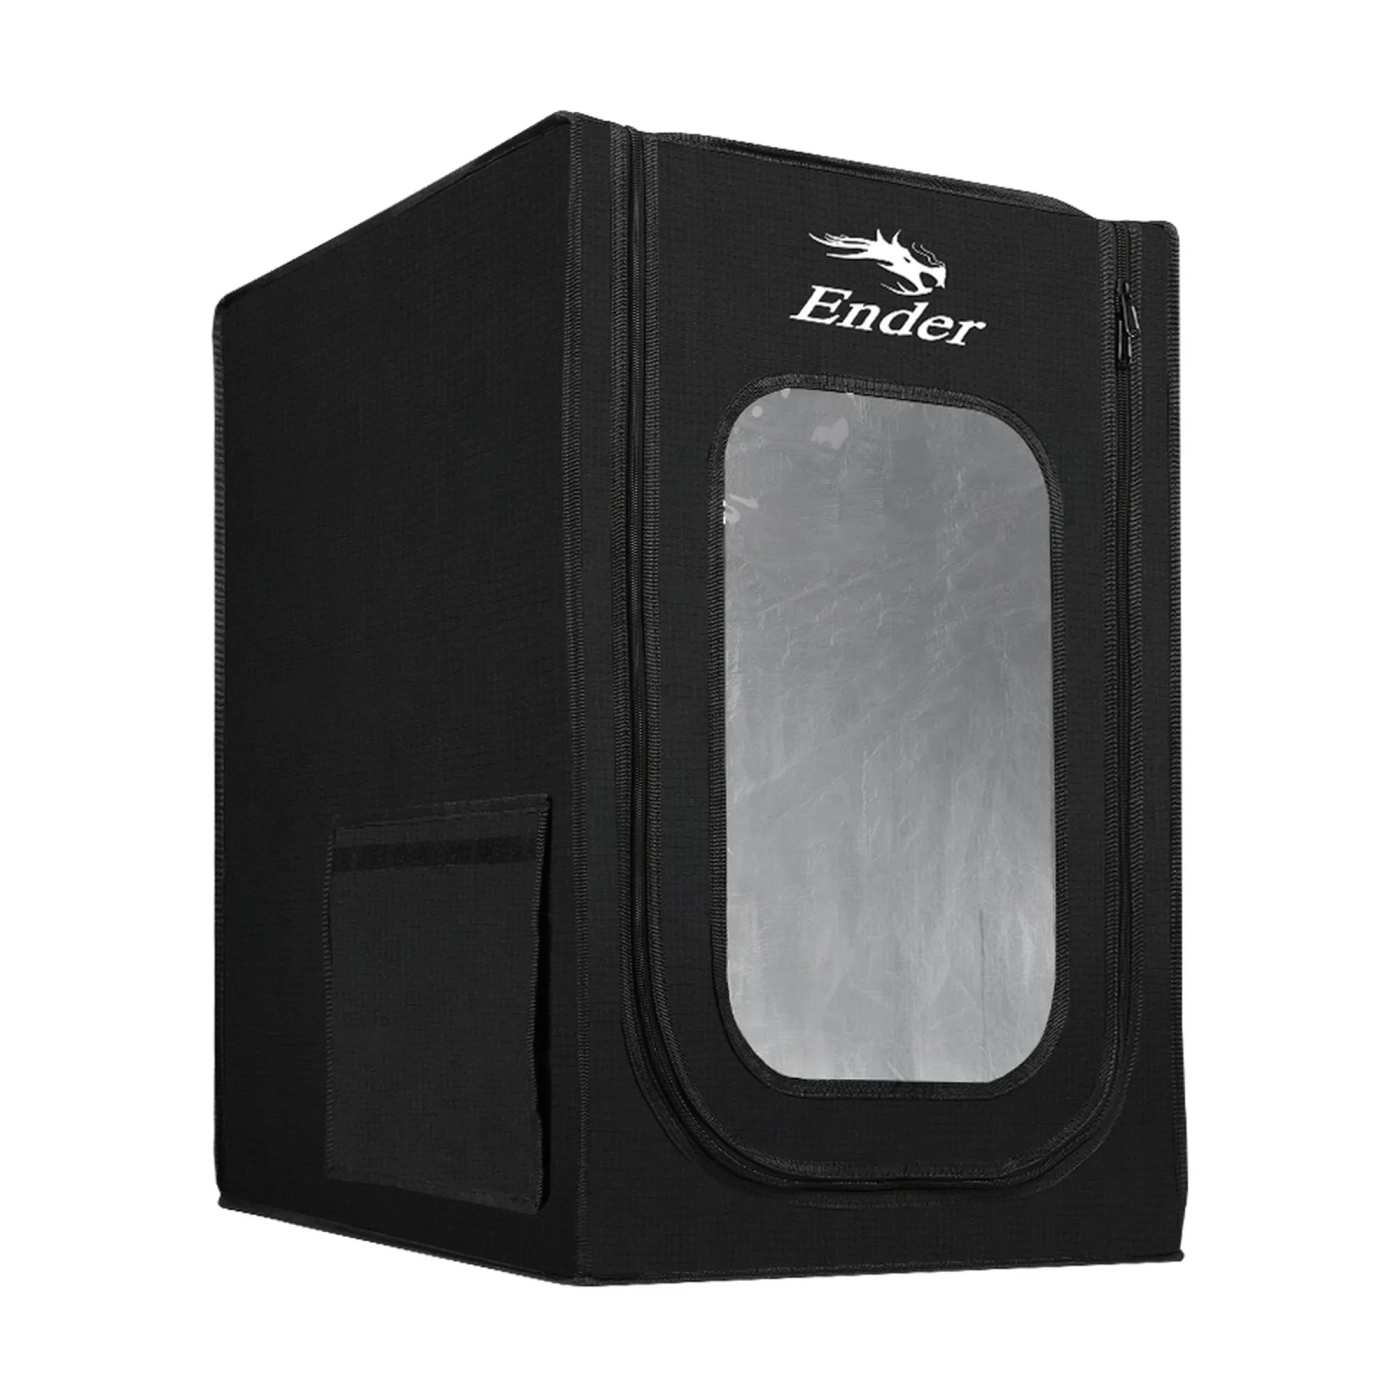 Купить Многофункциональный термокорпус CREALITY Ender для 3D принтера среднего размера 75x65x55cm (4008030049) - фото 3